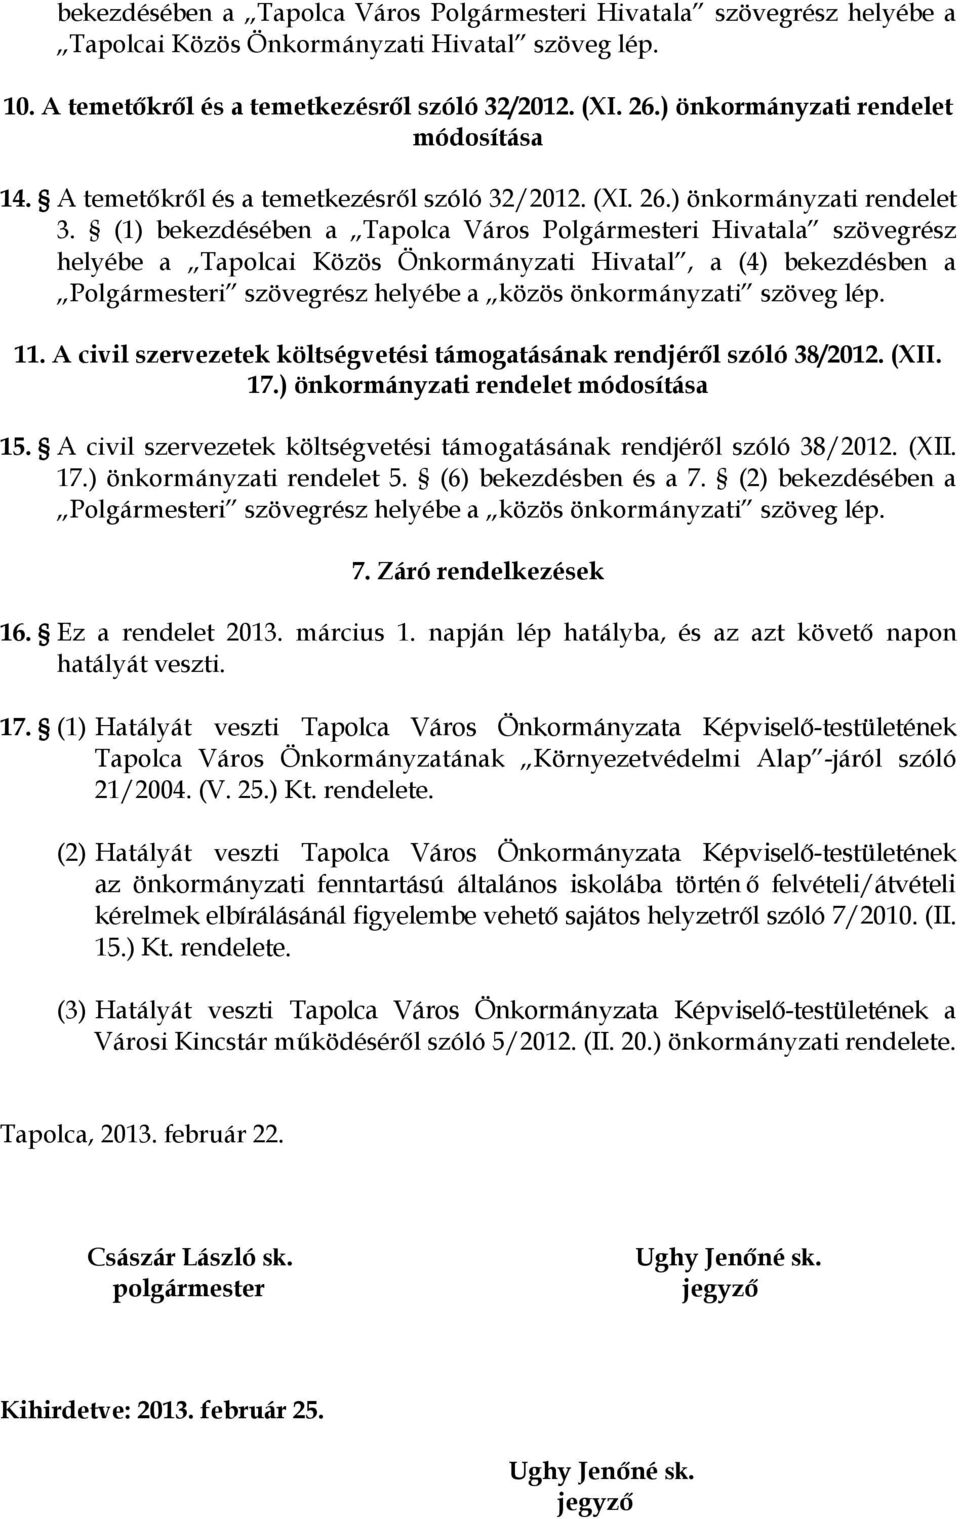 (1) bekezdésében a Tapolca Város Polgármesteri Hivatala szövegrész helyébe a Tapolcai Közös Önkormányzati Hivatal, a (4) bekezdésben a Polgármesteri szövegrész helyébe a közös önkormányzati szöveg